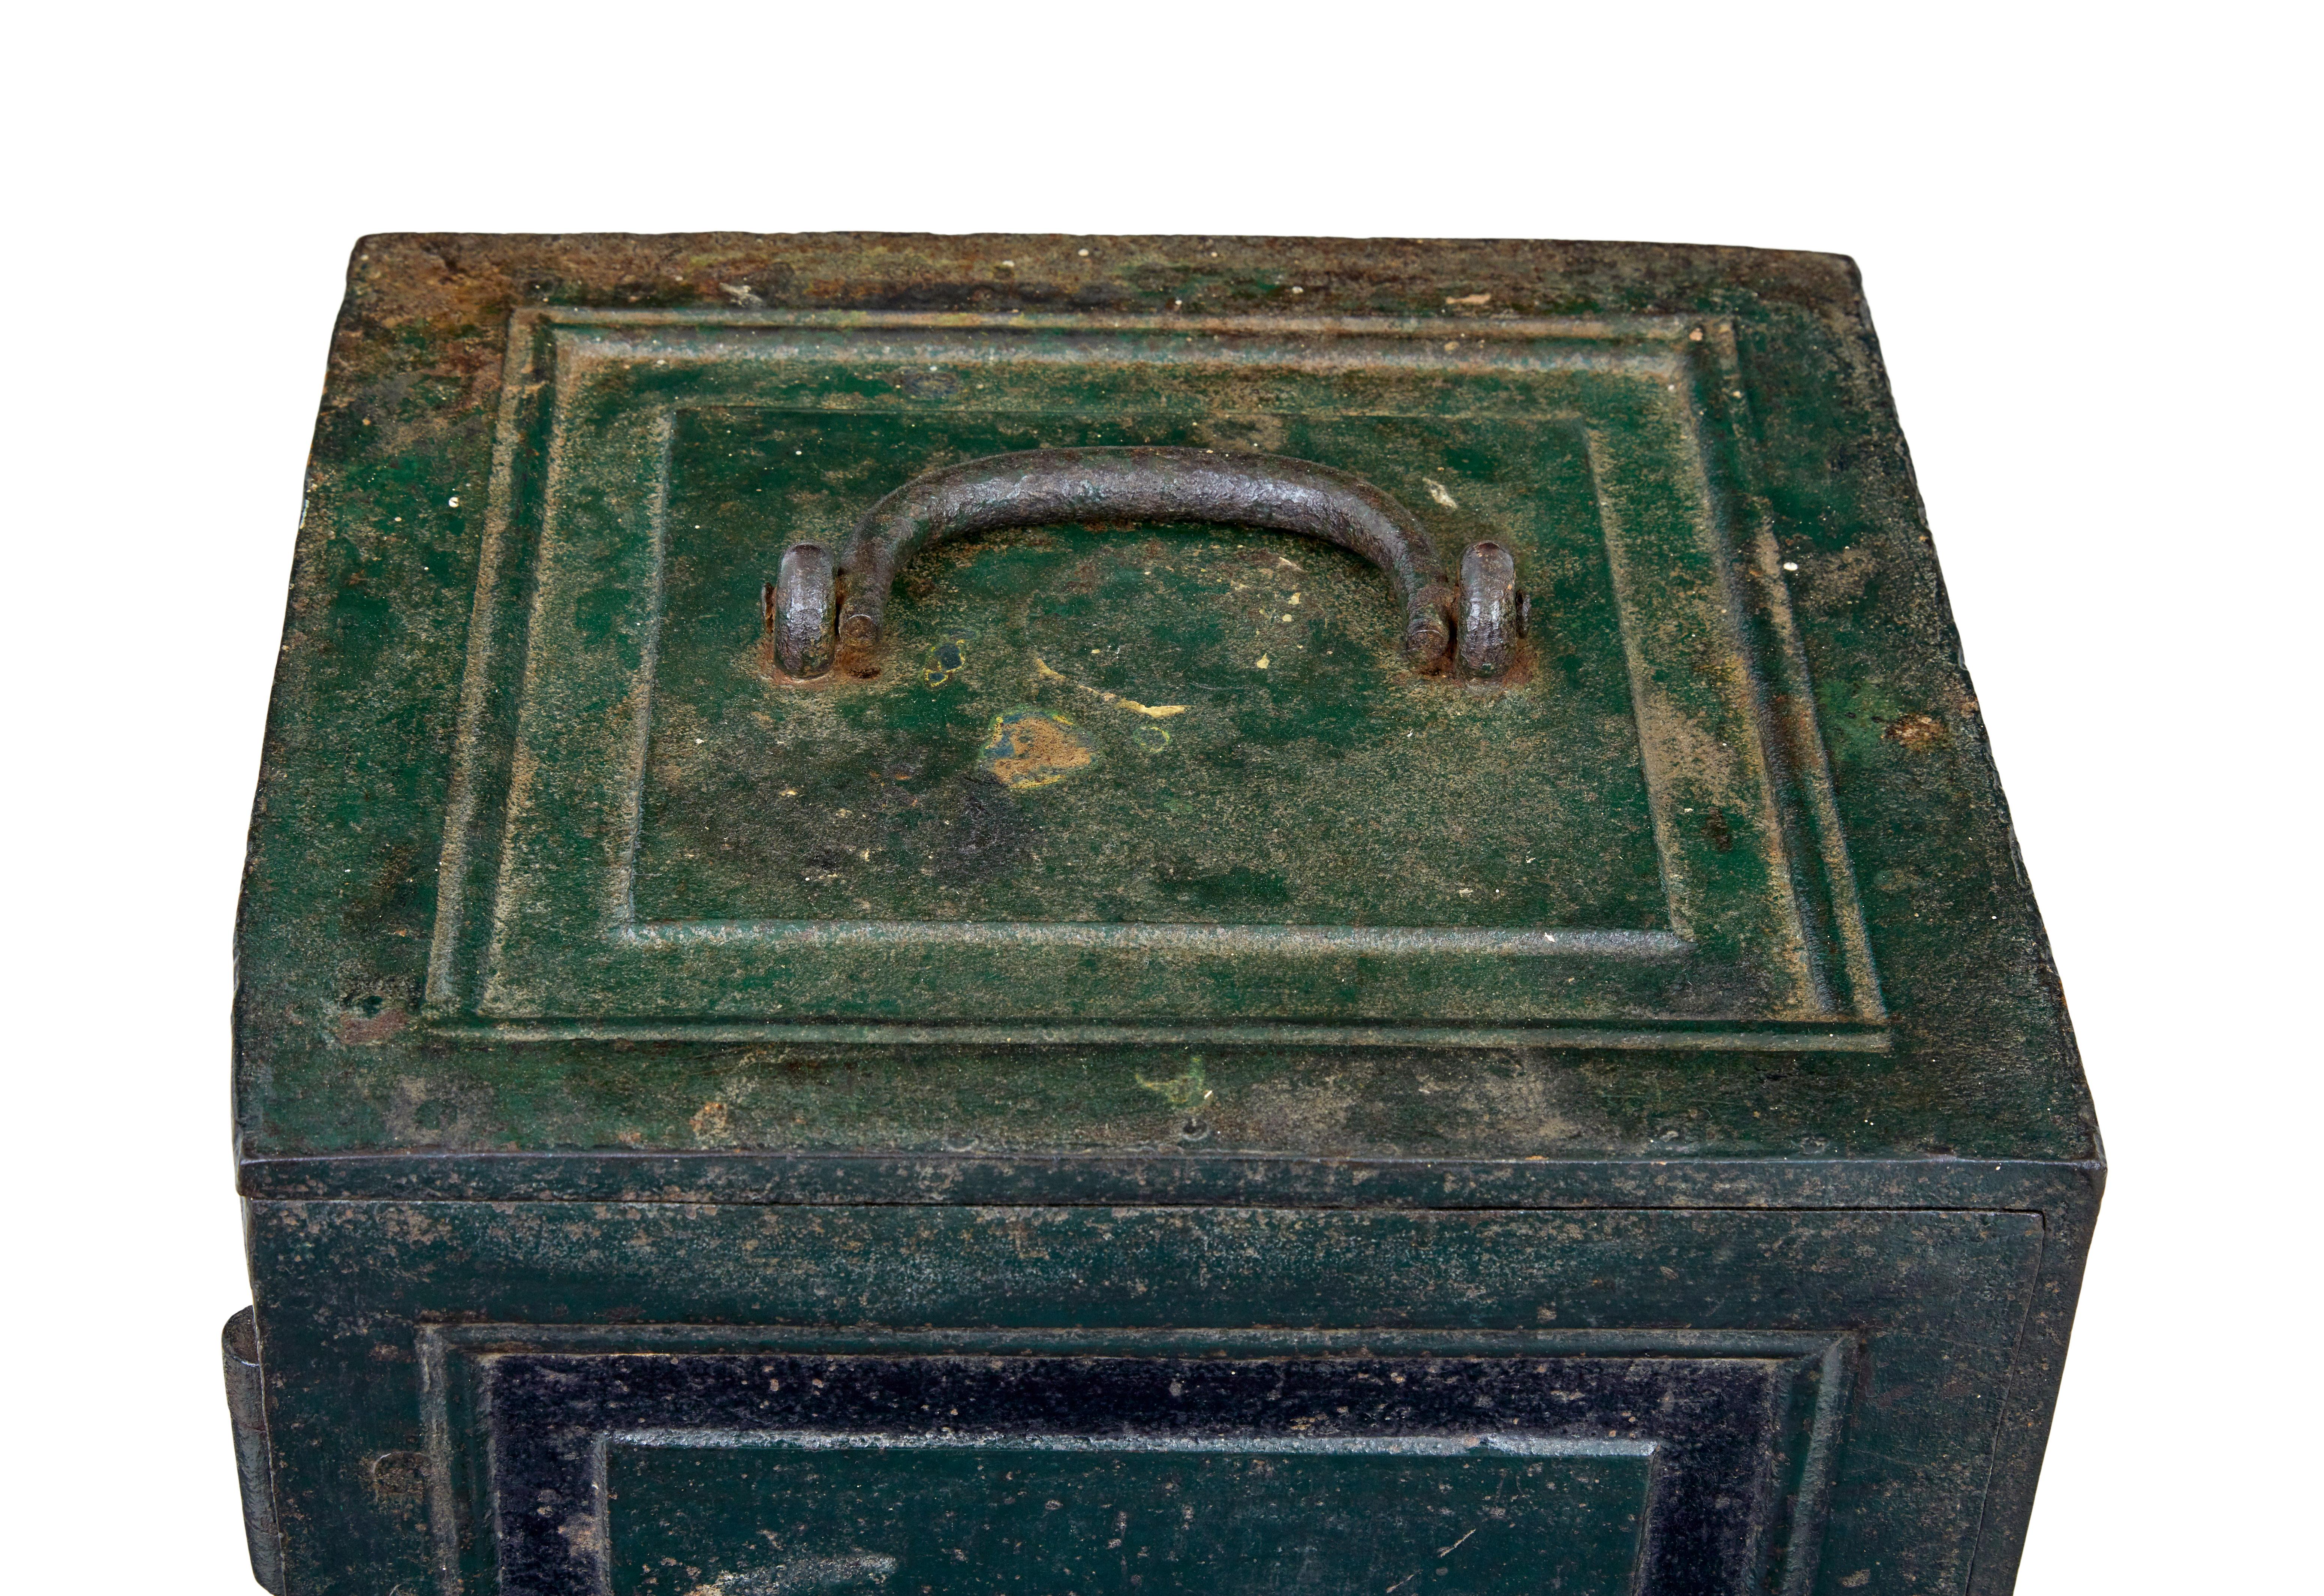 Bemalter Eisentresor aus dem frühen 19. Jahrhundert, um 1830.

Wir freuen uns, diesen gusseisernen Tresor in nahezu originalem Zustand anbieten zu können, der auch heute noch funktioniert.

Gegossene Felder auf der Vorderseite und an den Seiten, der